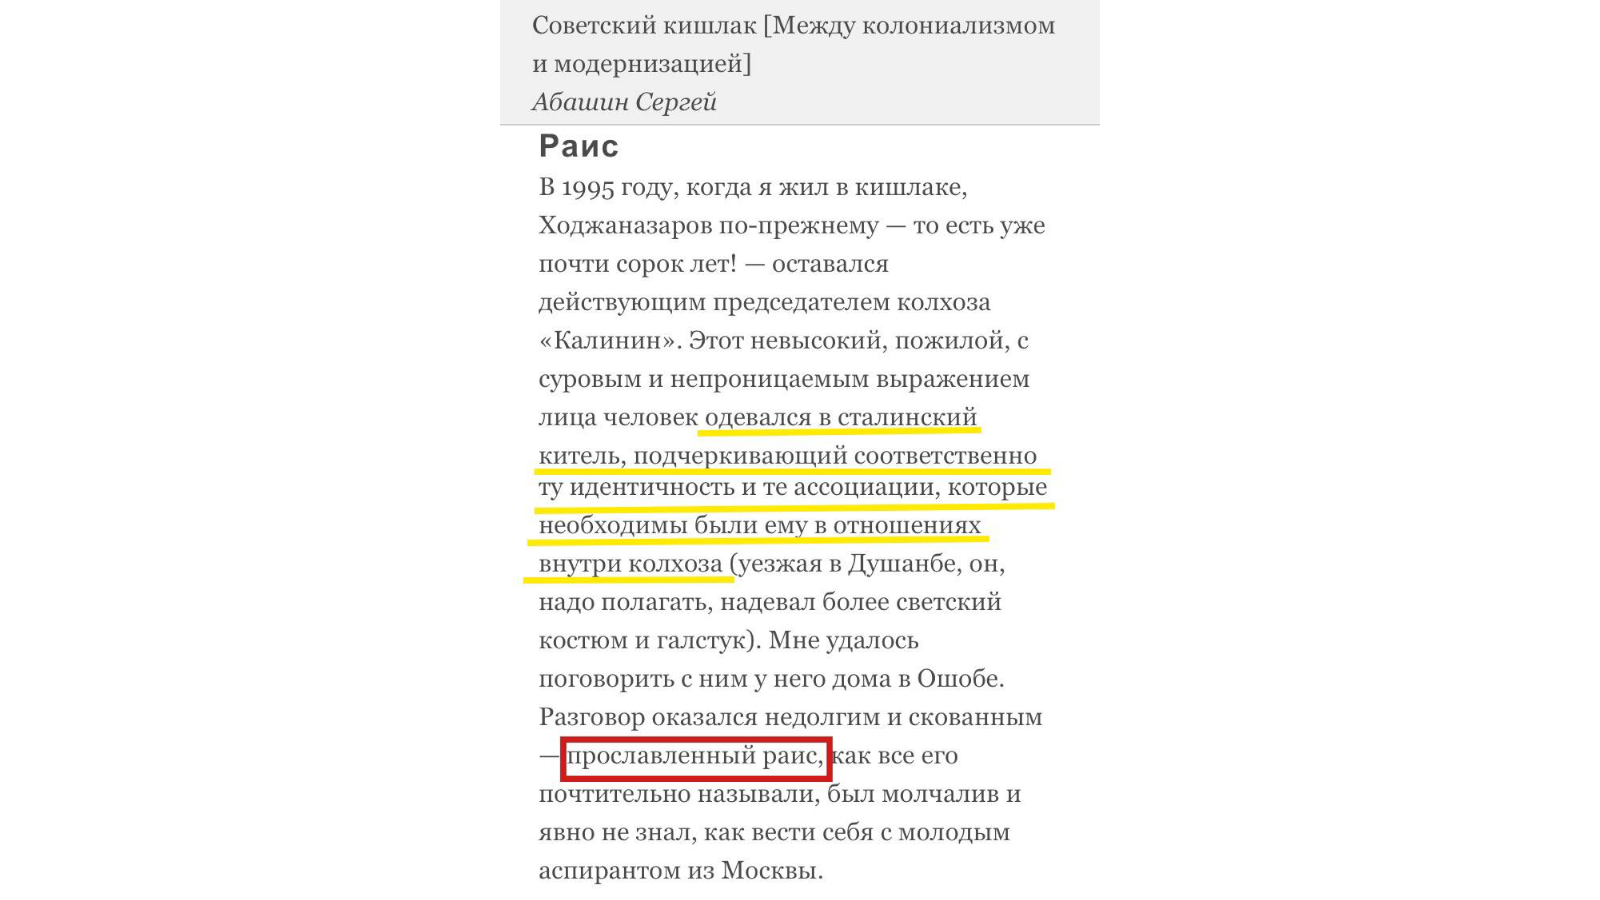 „Raisza törvénye”: Tatarföld nevű kolhoz vagy egy Tatarföld nevű ország?